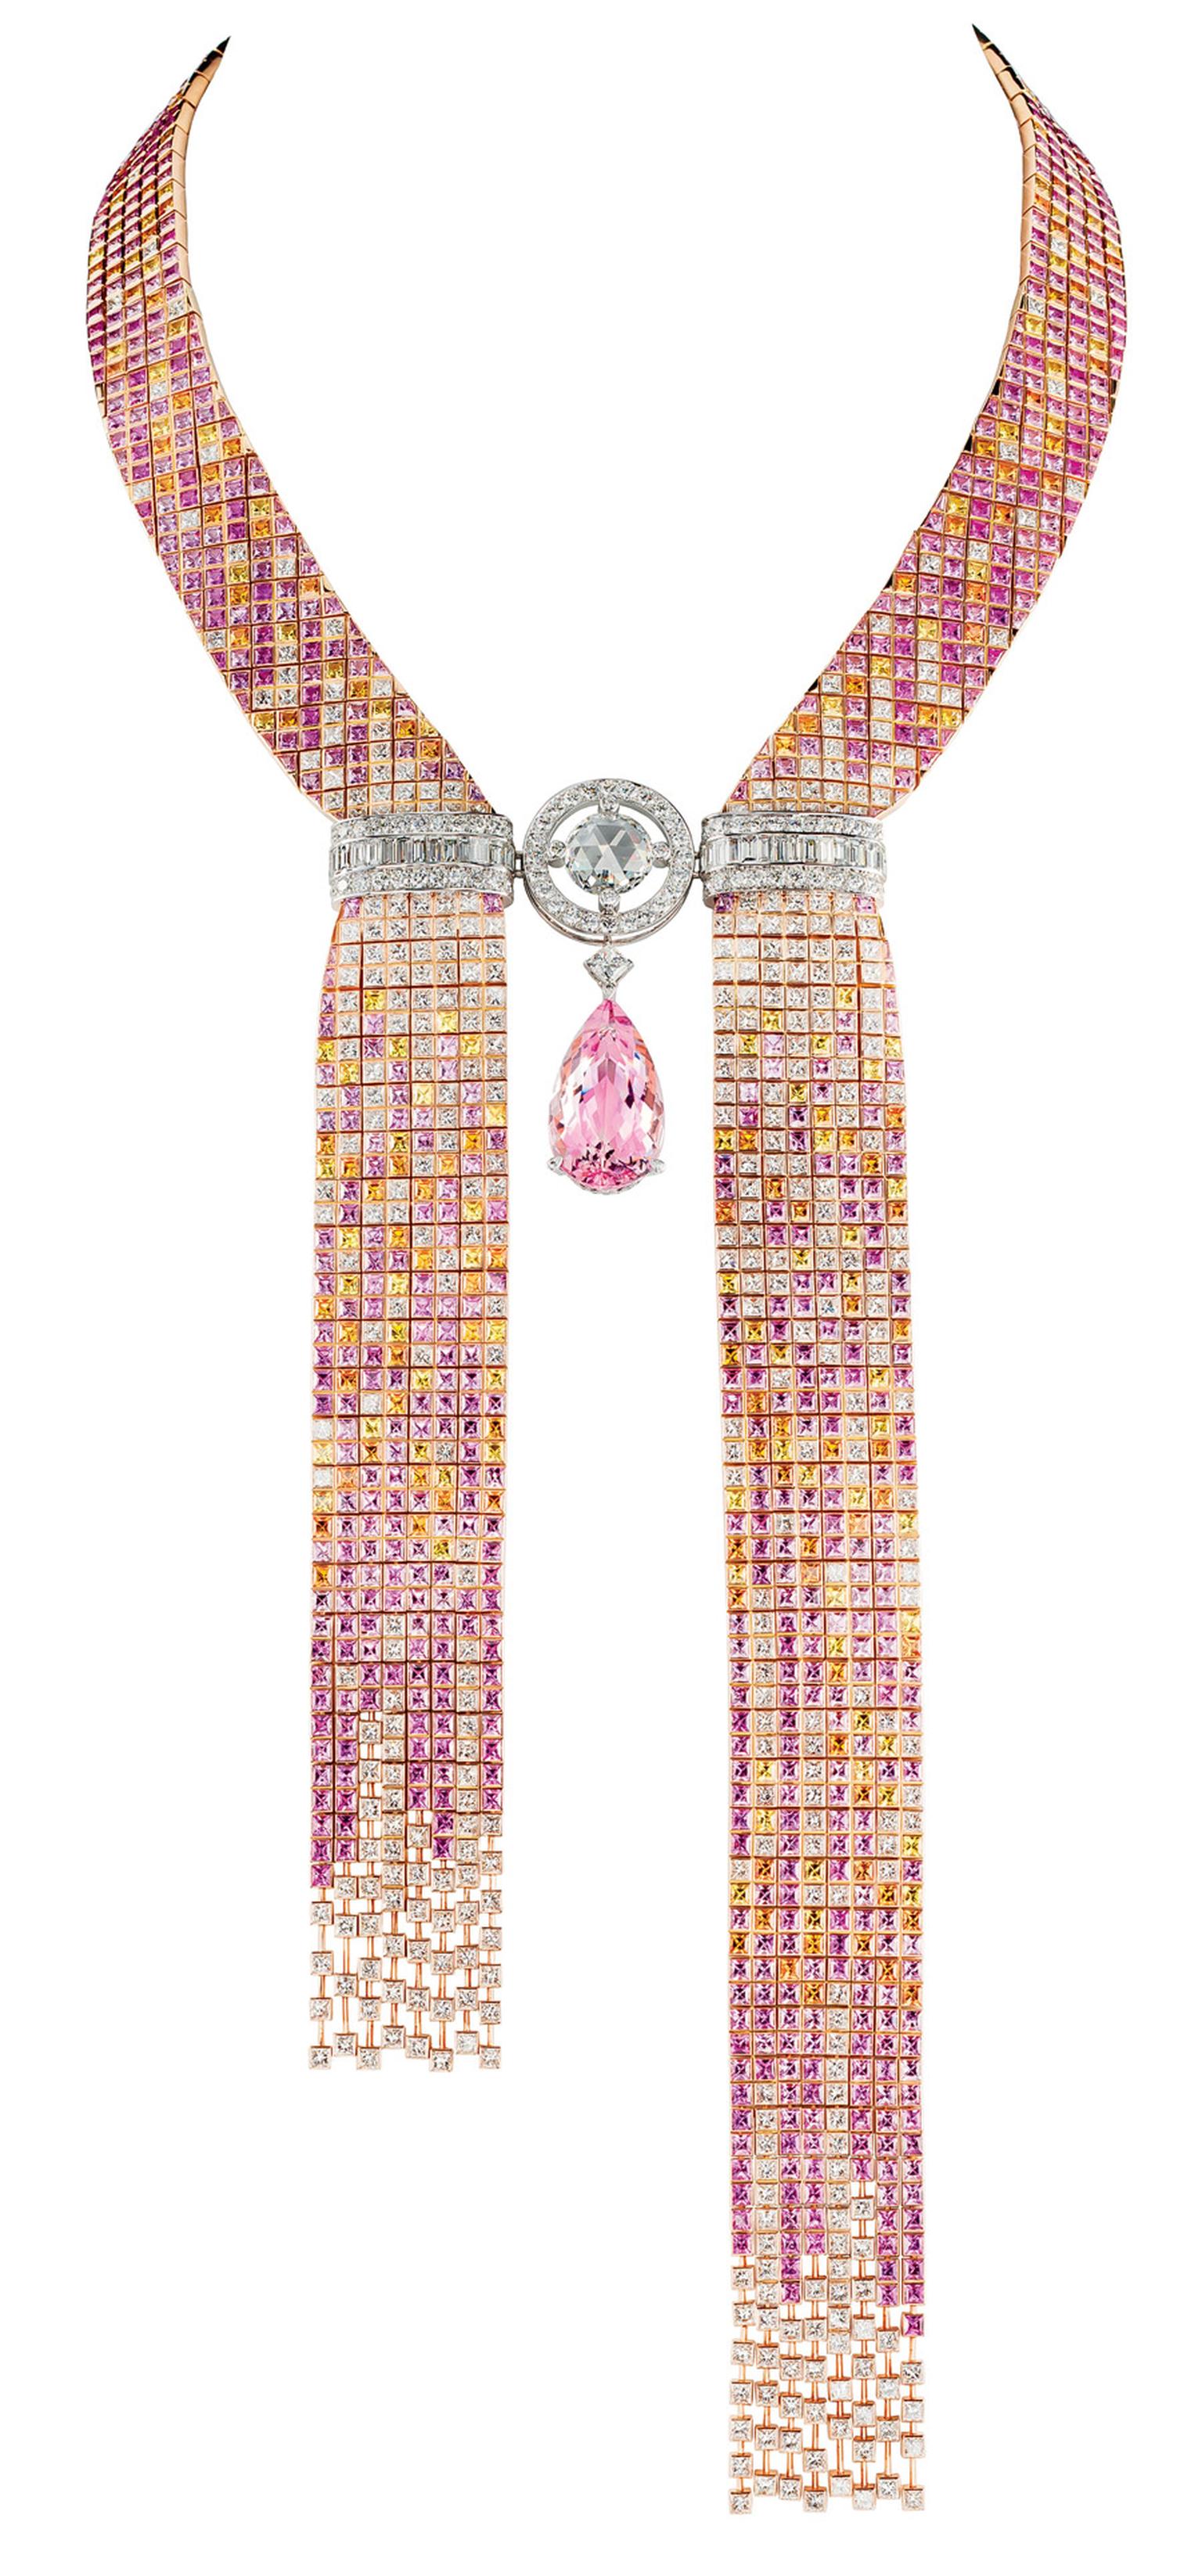 Boucheron Mosaïque Delilah necklace, shown at the 2012 Biennale des Antiquaires in Paris